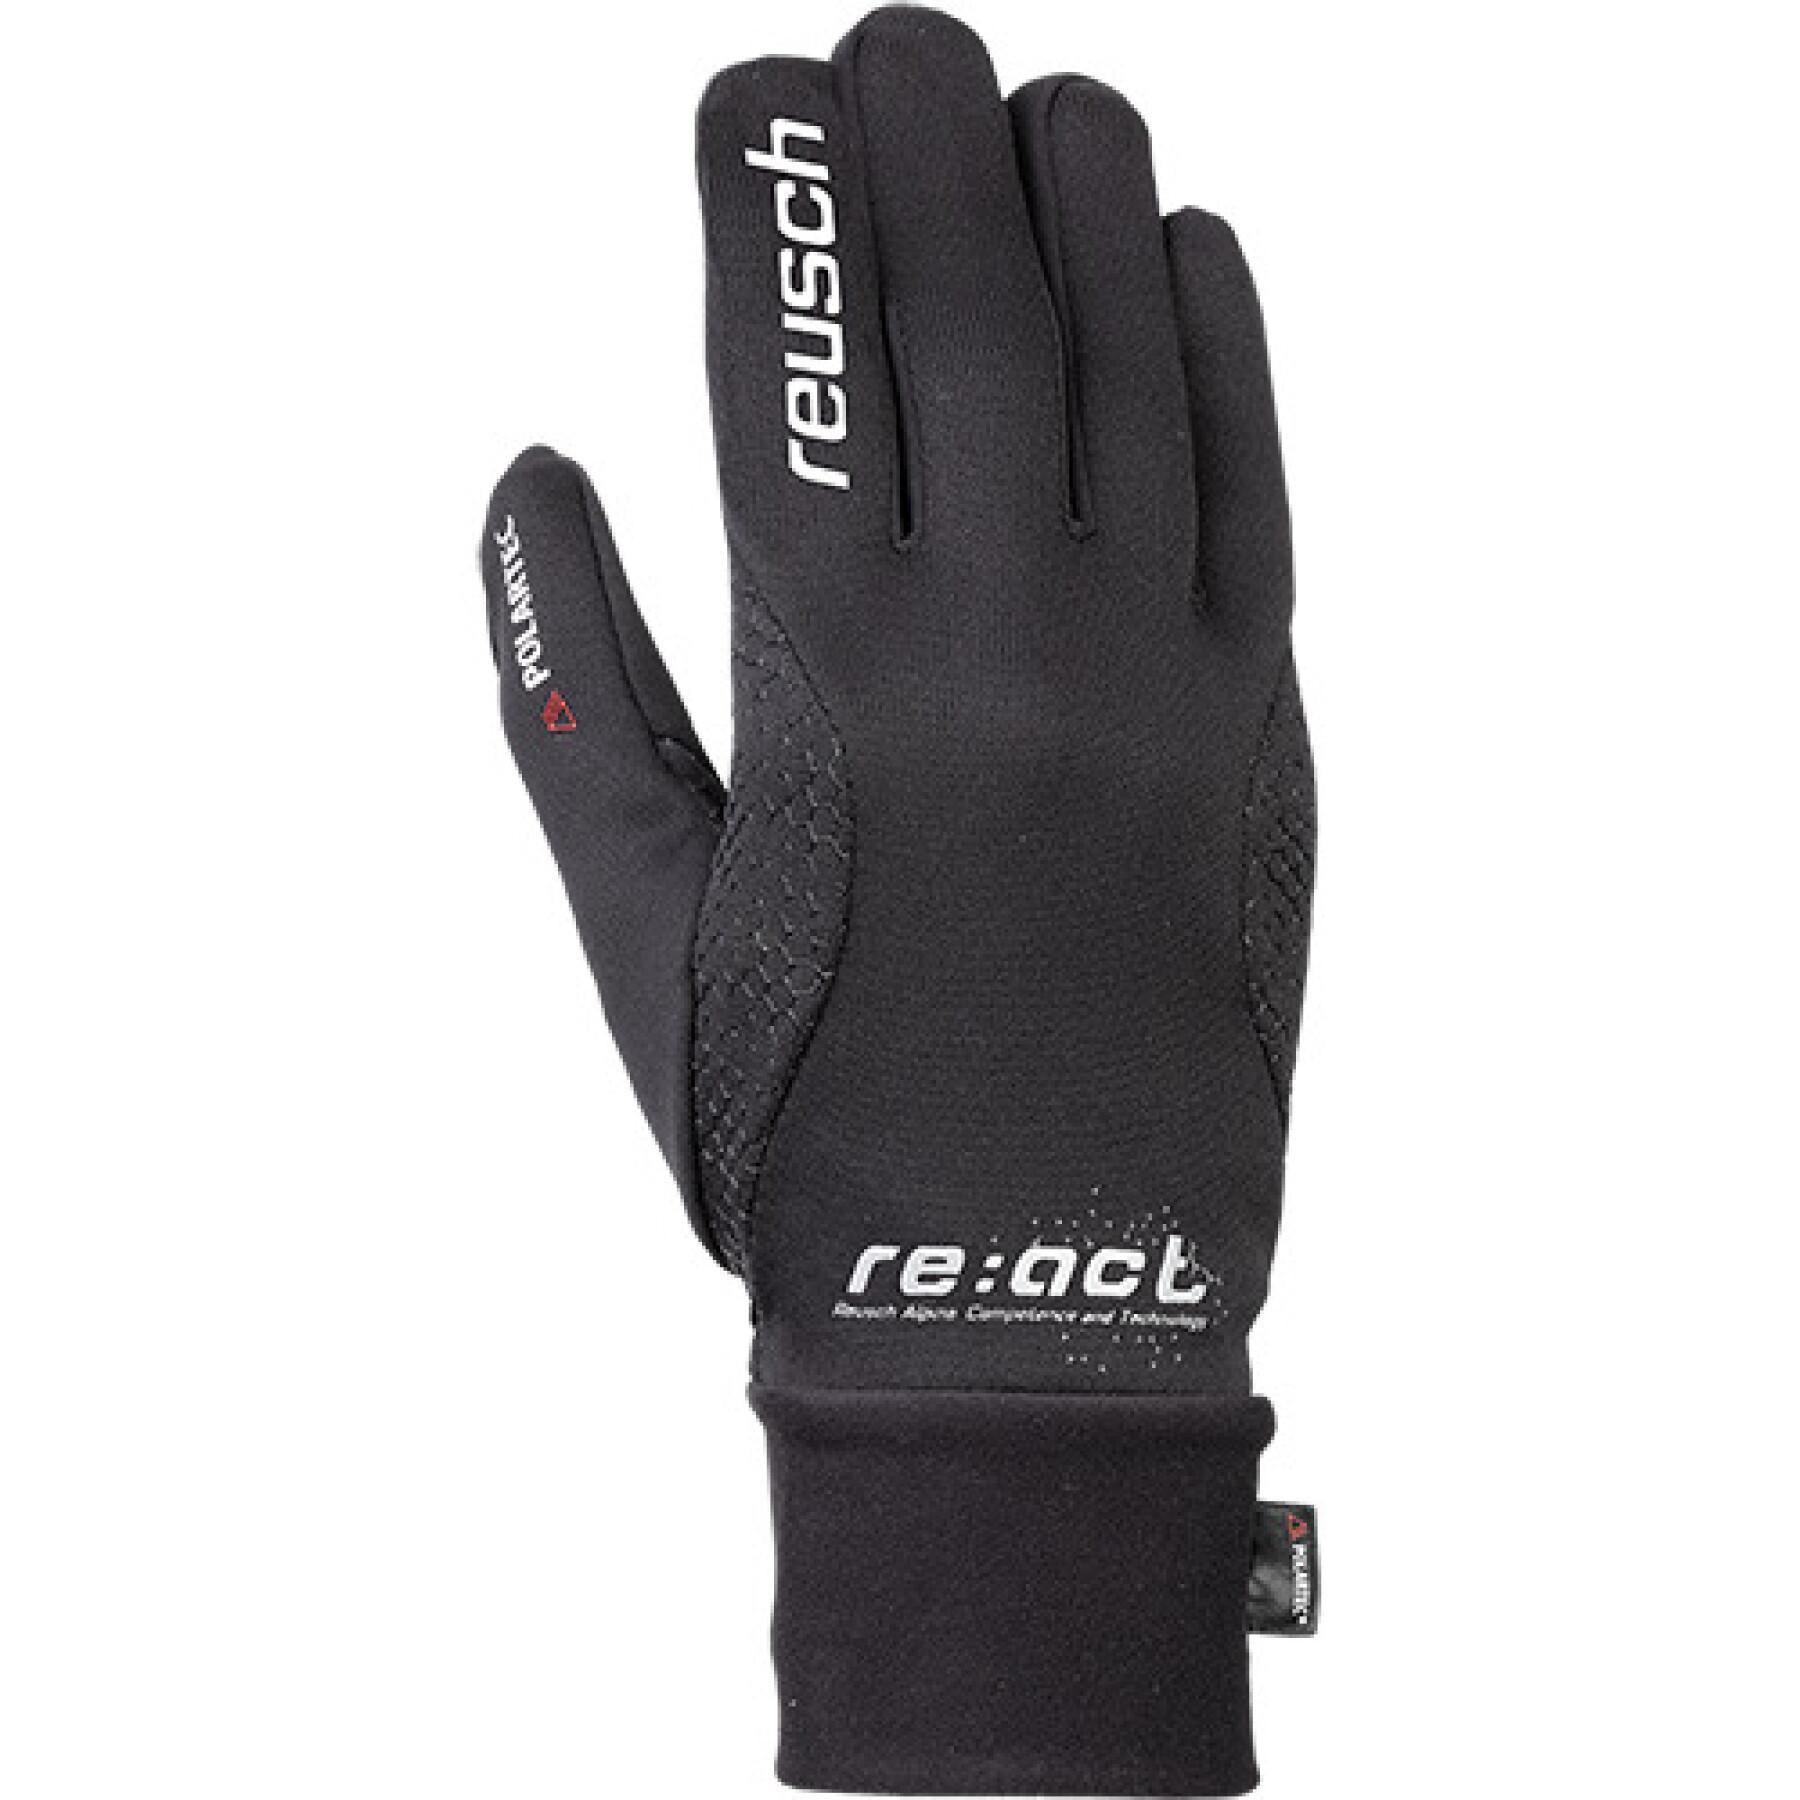 Gloves Reusch Lhasa Touch-tec